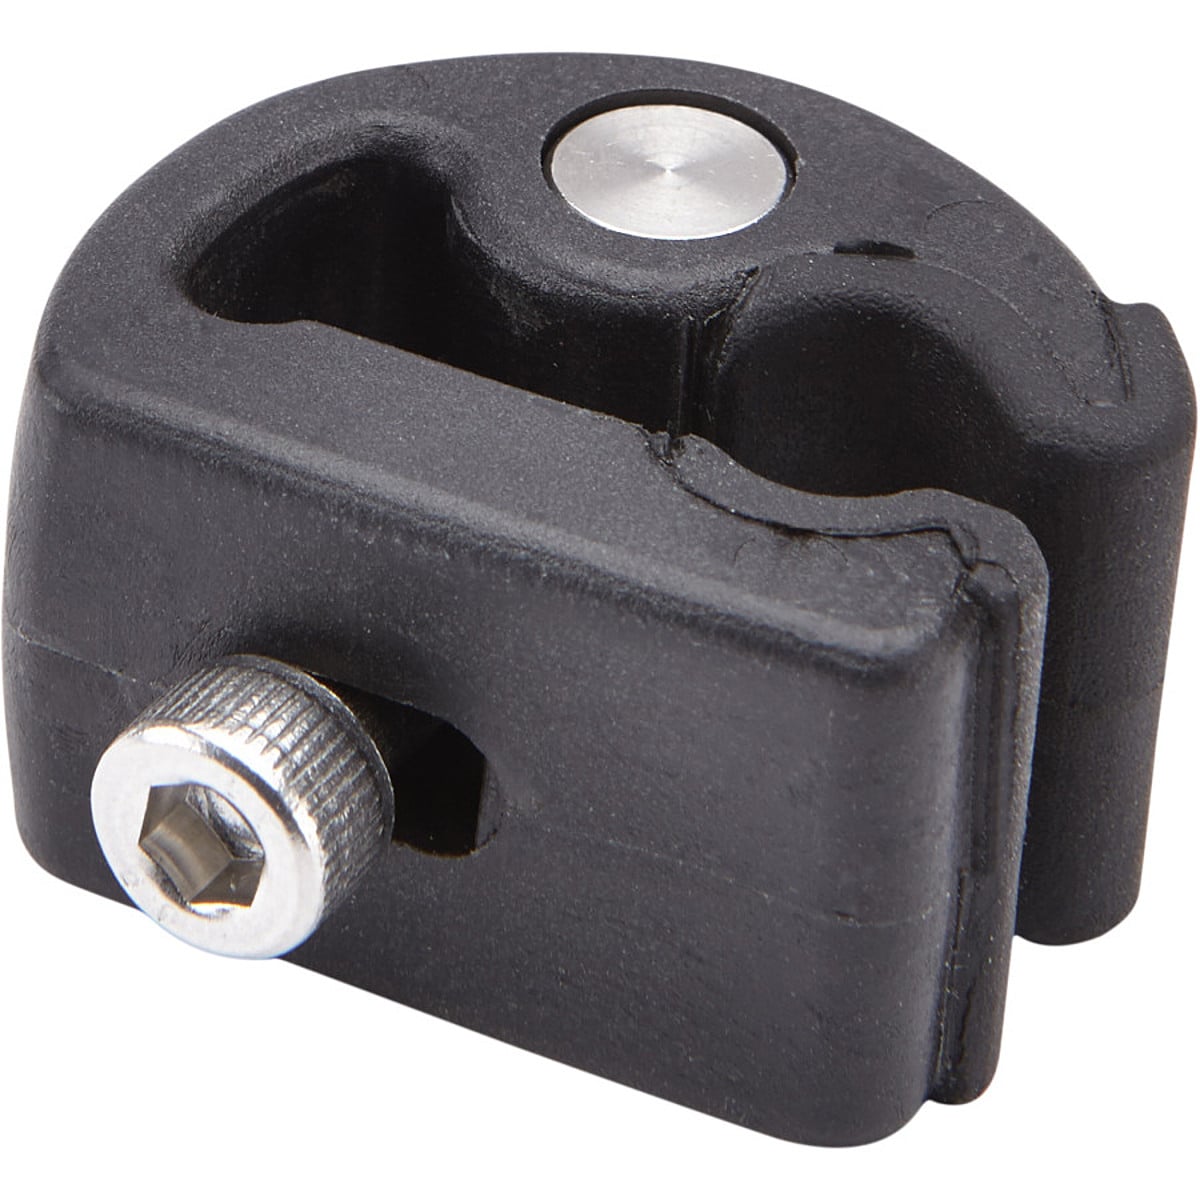 Thule Pack 'n Pedal Rack Adapter Bracket - Magnet